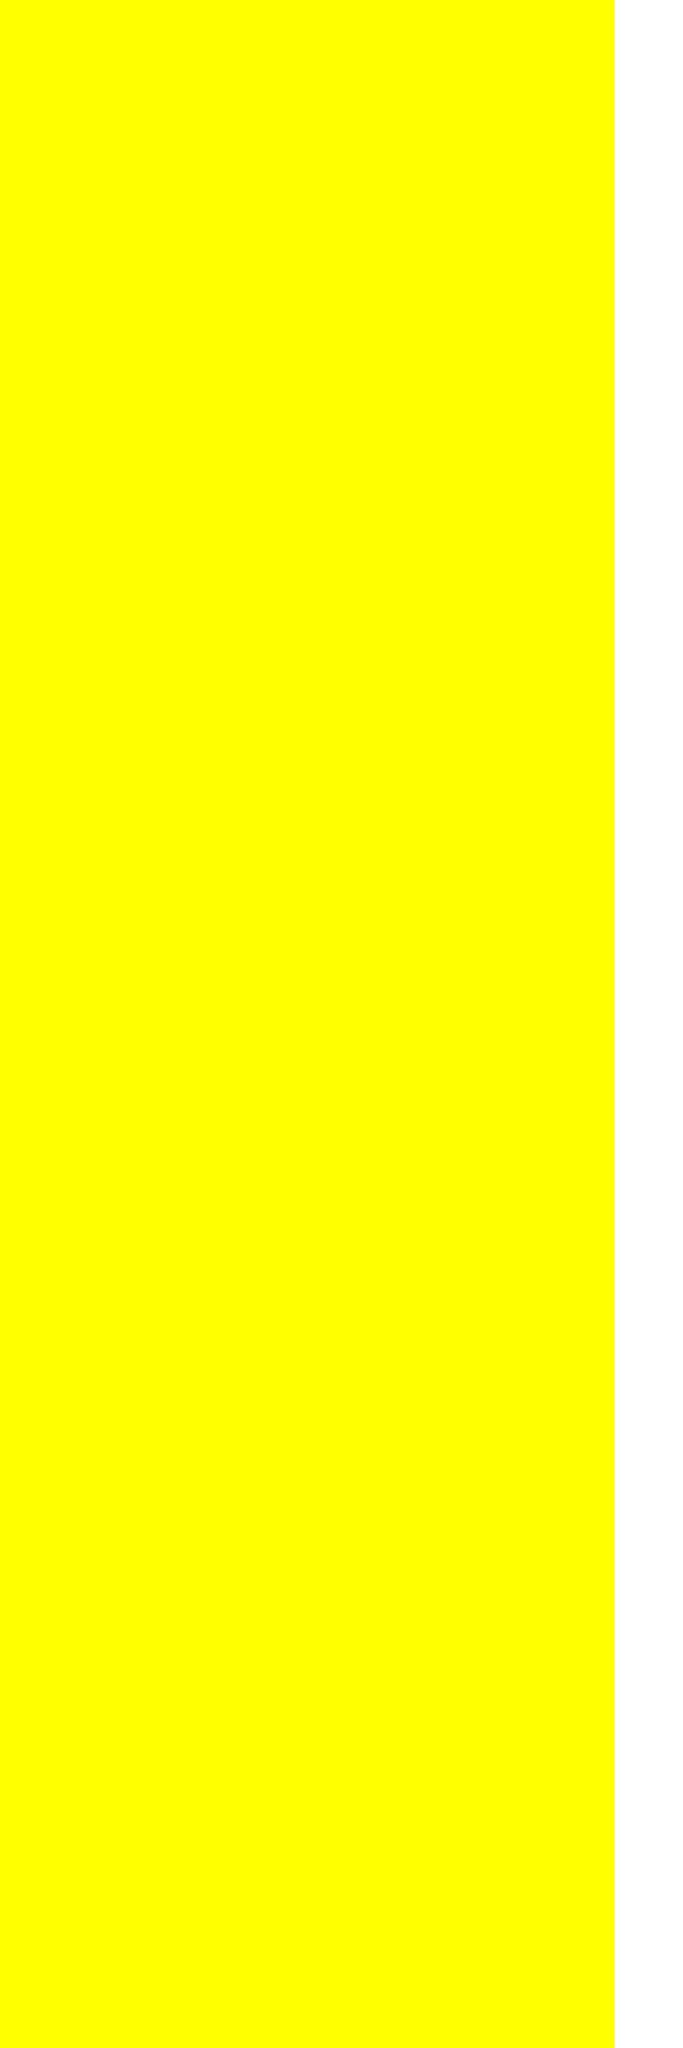 Желтый прямоугольник